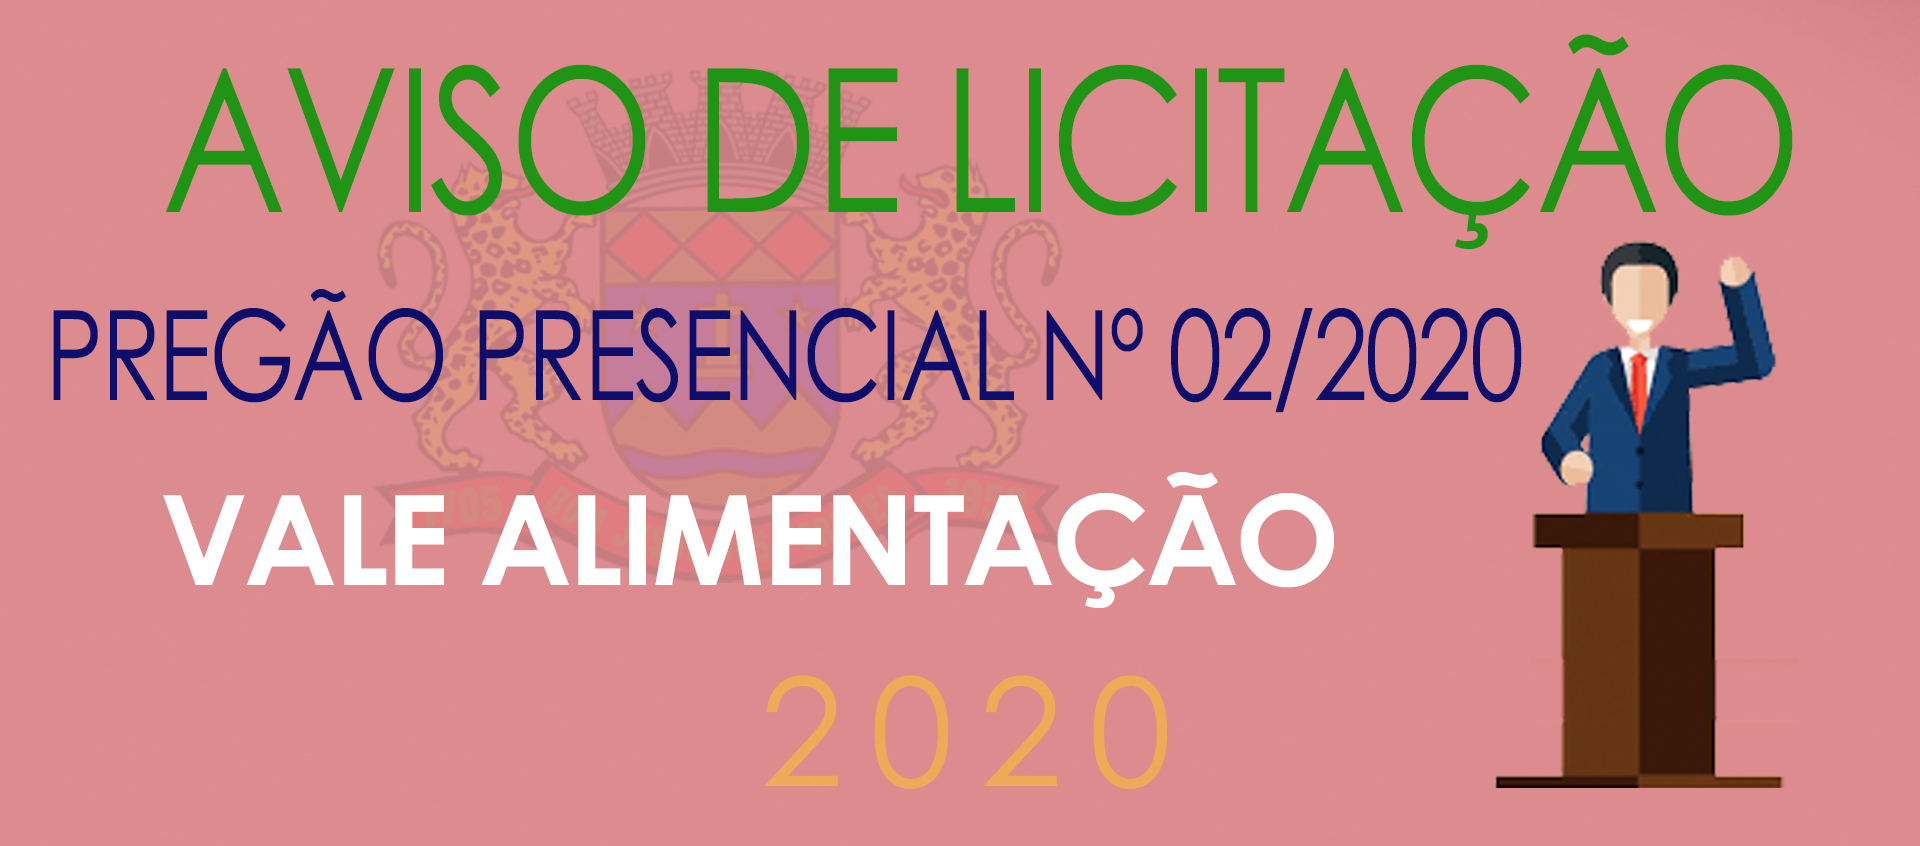 Pregão Presencial 02/2020